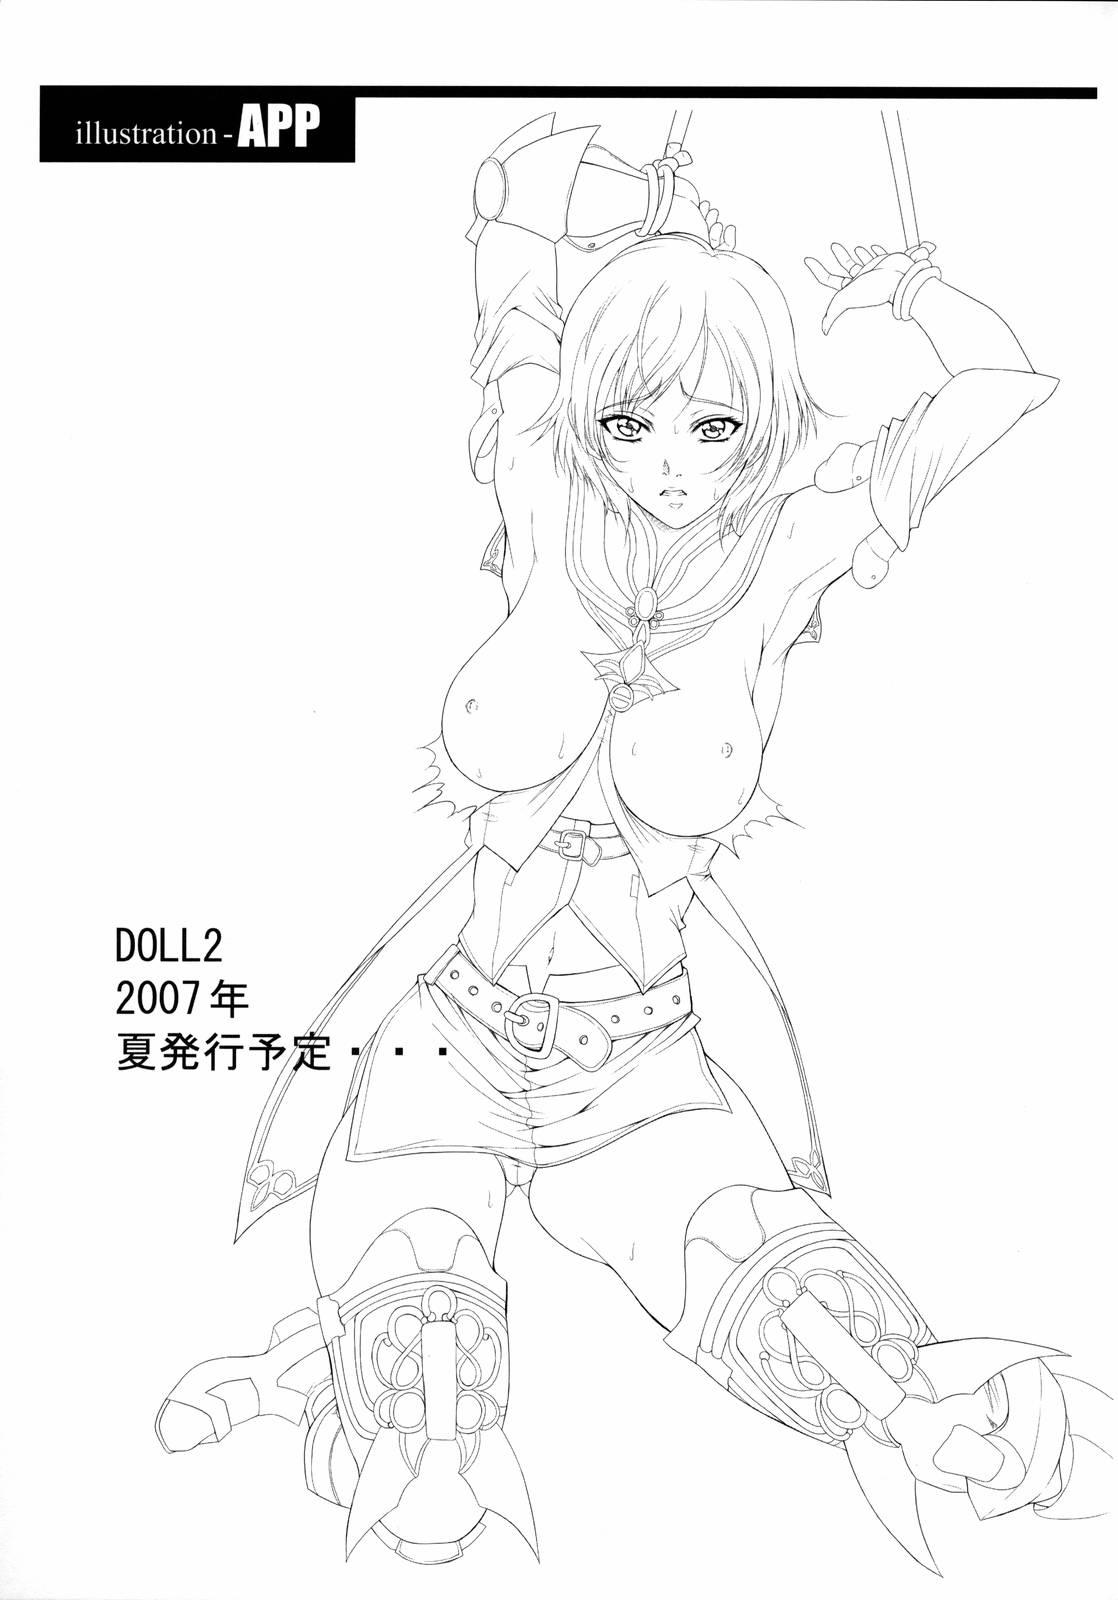 Doll 36